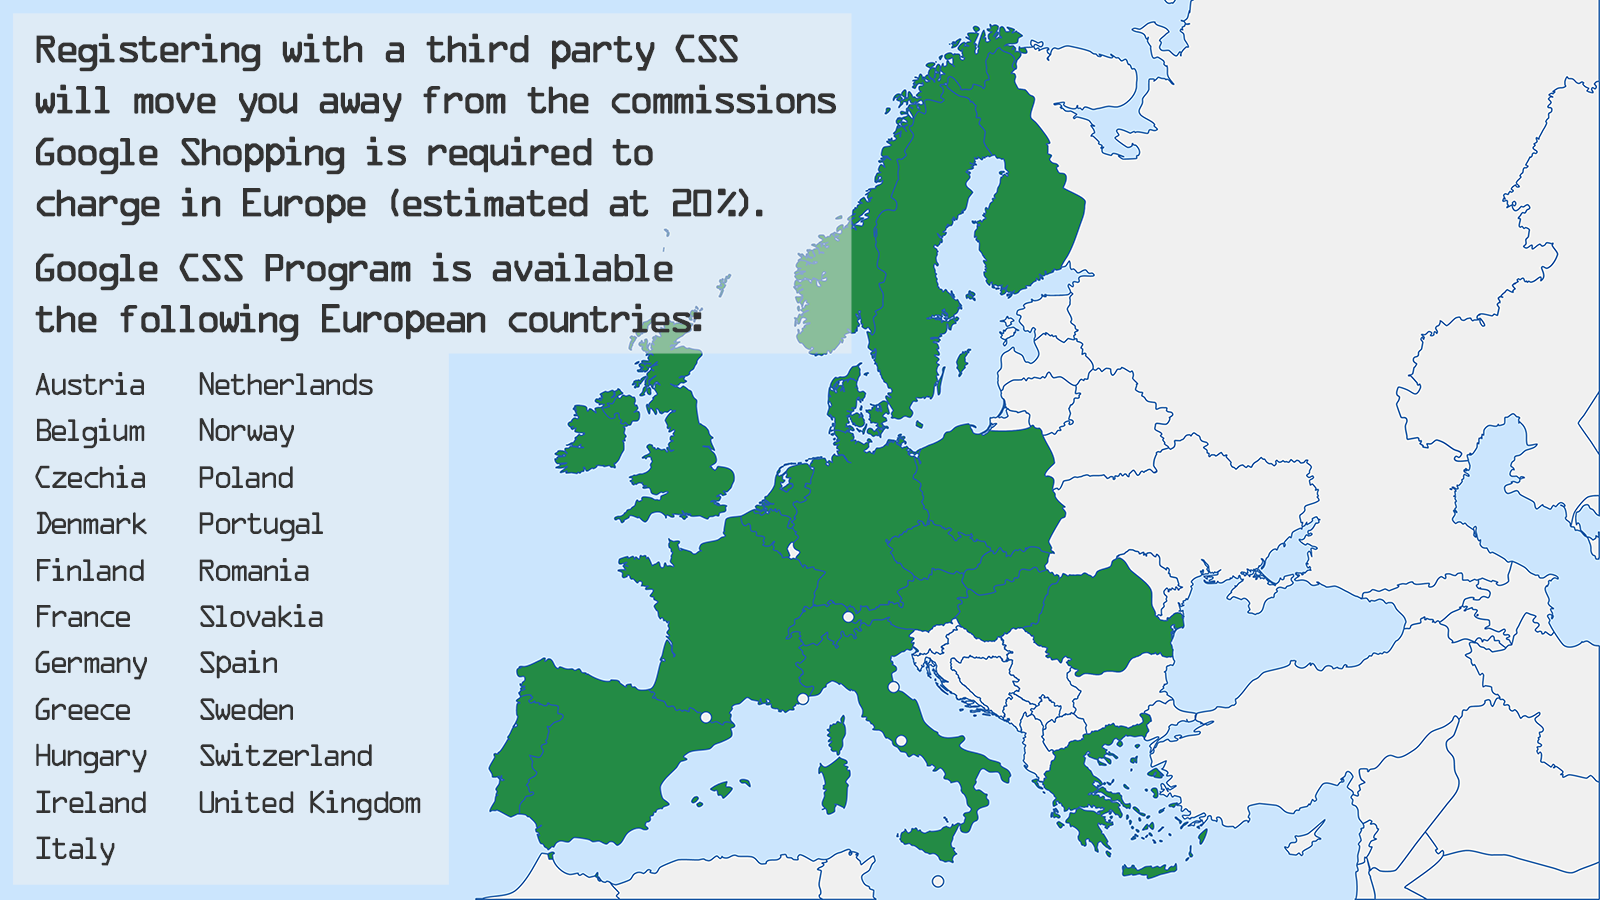 El Programa Google CSS está disponible en 21 países europeos